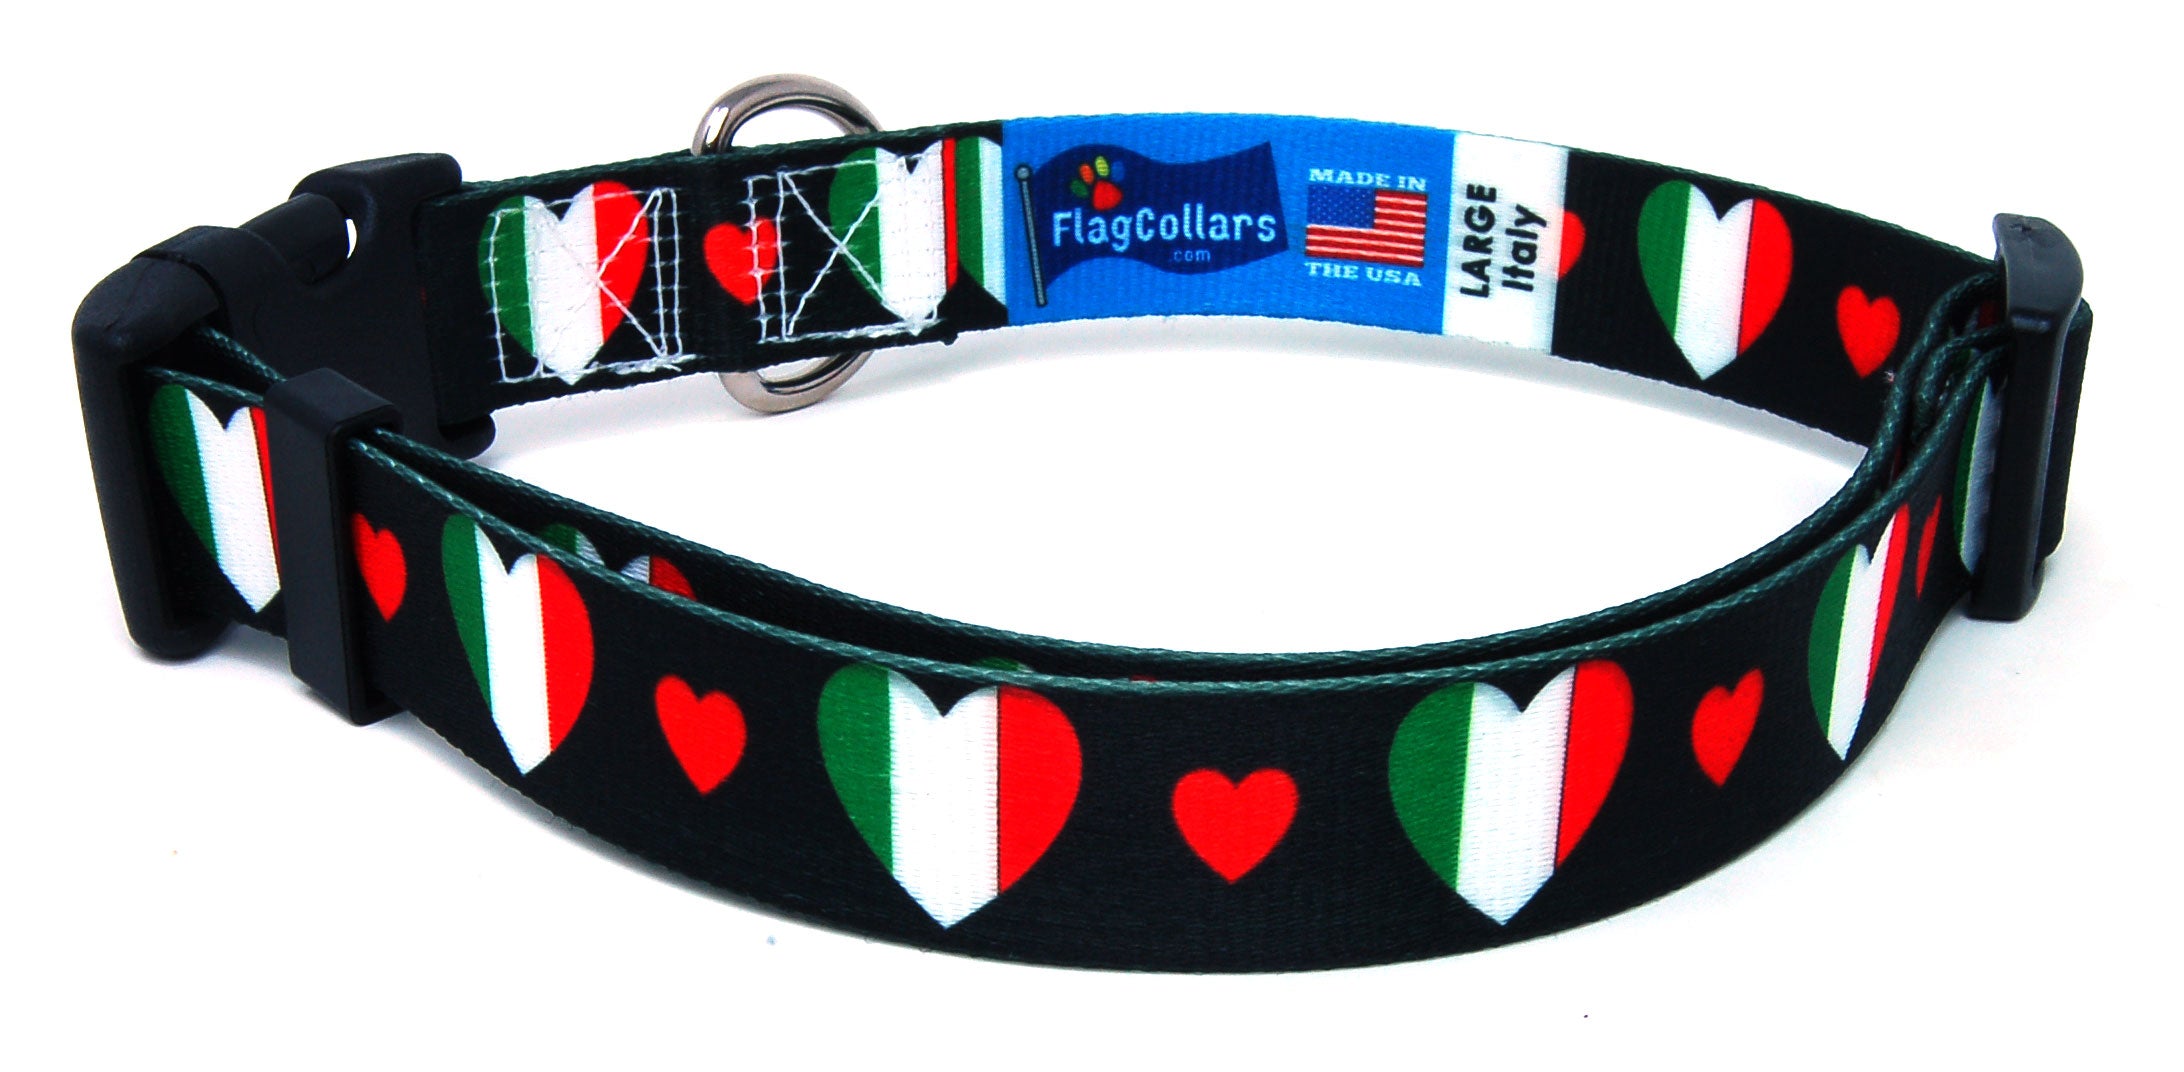 Italian Dog Collar with Red Hearts | I Love Italy